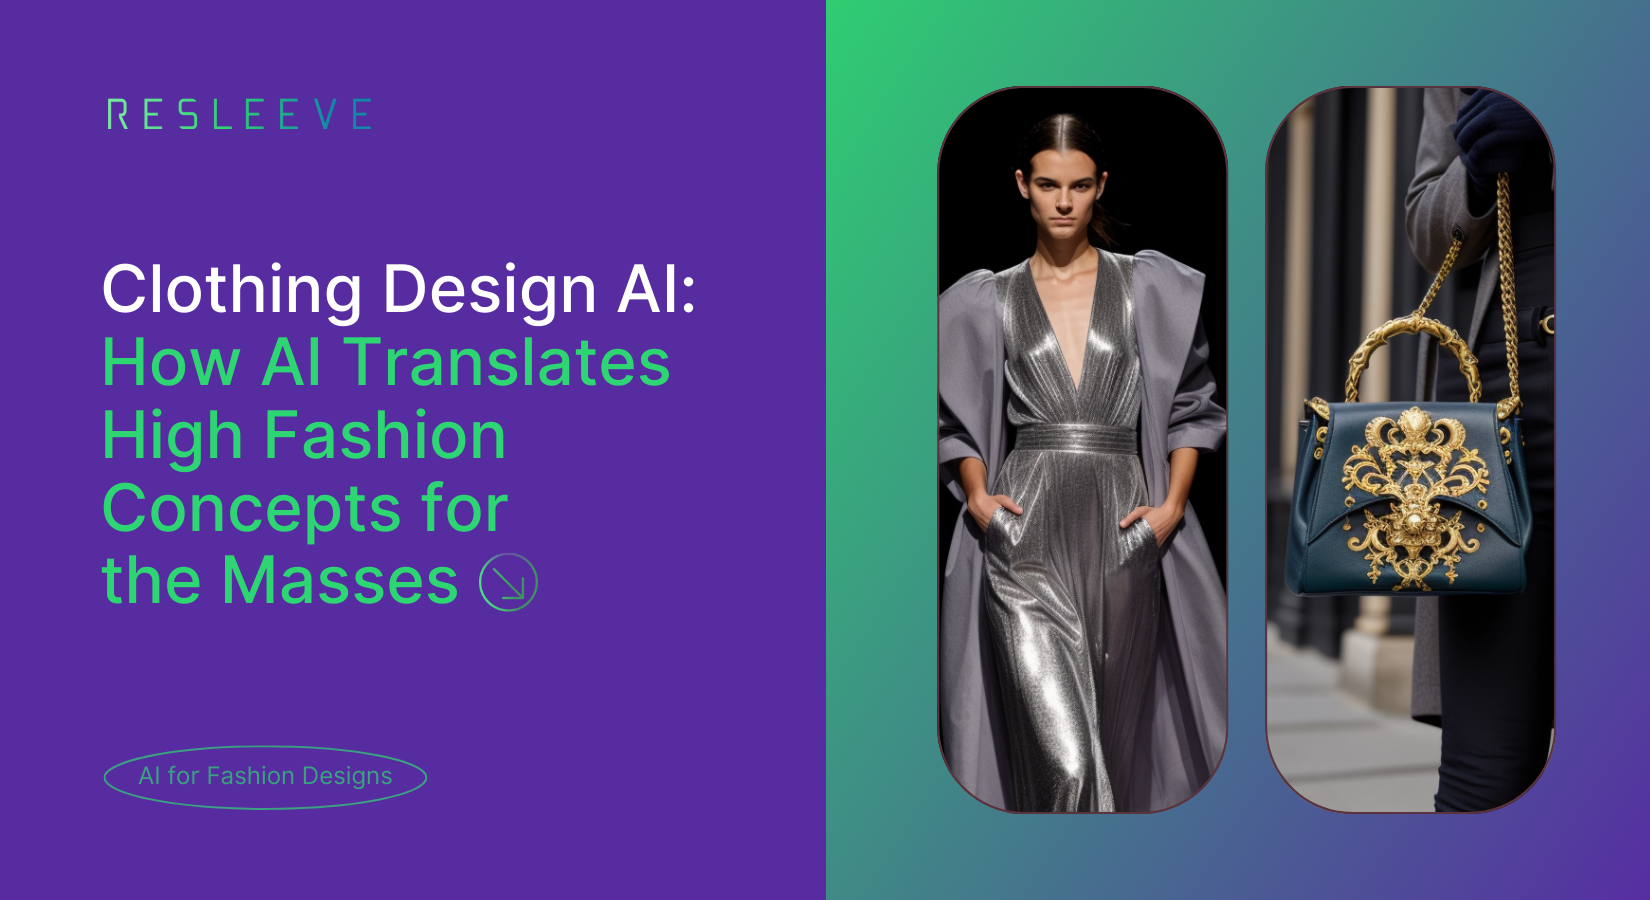 Clothing Design AI: How AI Translates High Fashion Concepts for the Masses